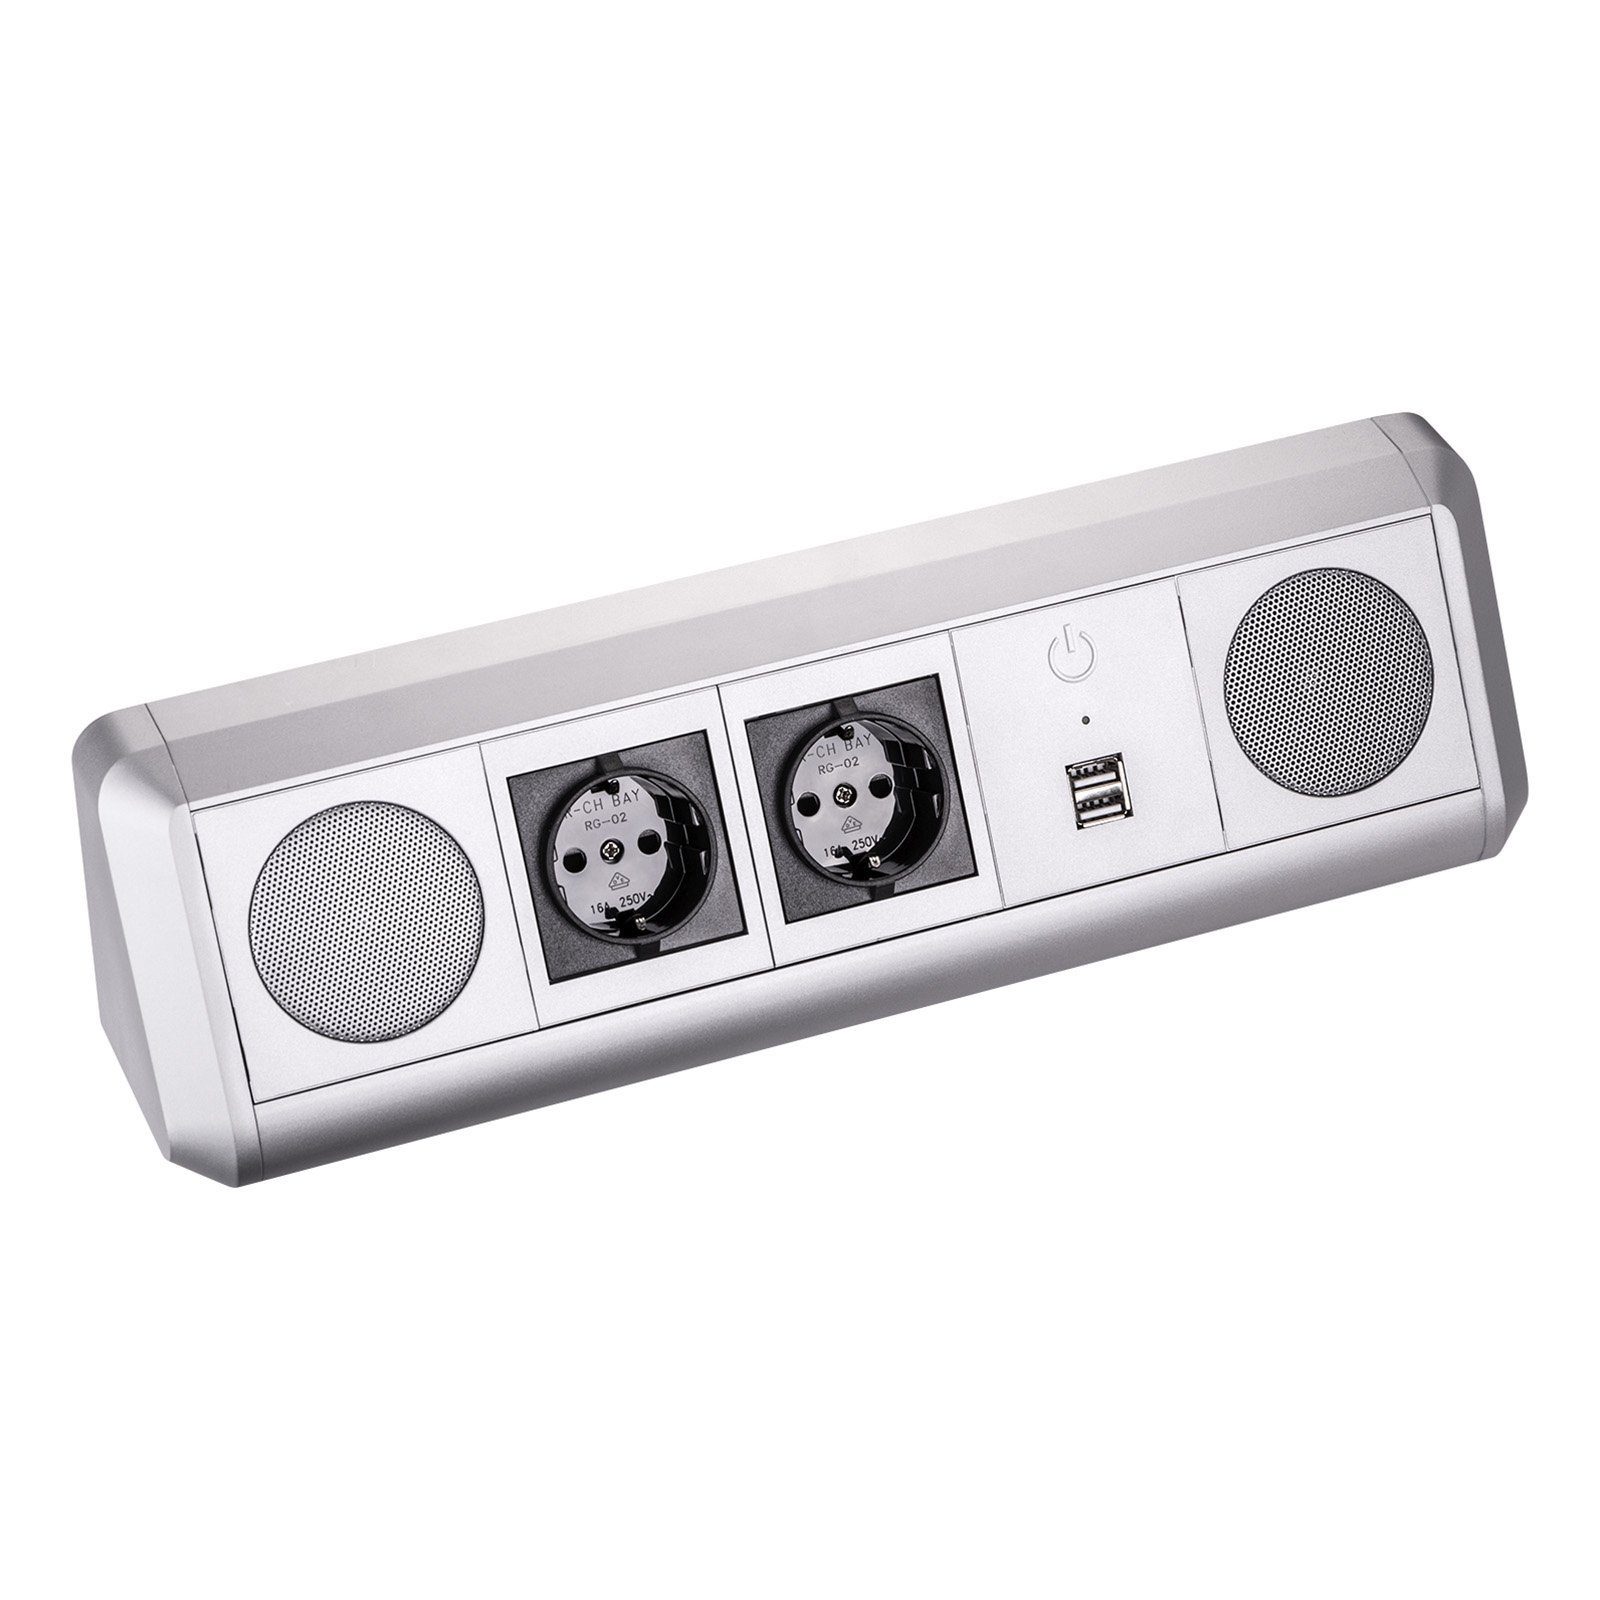 SO-TECH® Computerschrank Stereo Bluetooth Lautsprecher TOBO Soundbox mit 2 Schuko Steckdosen und zwei USB Ports